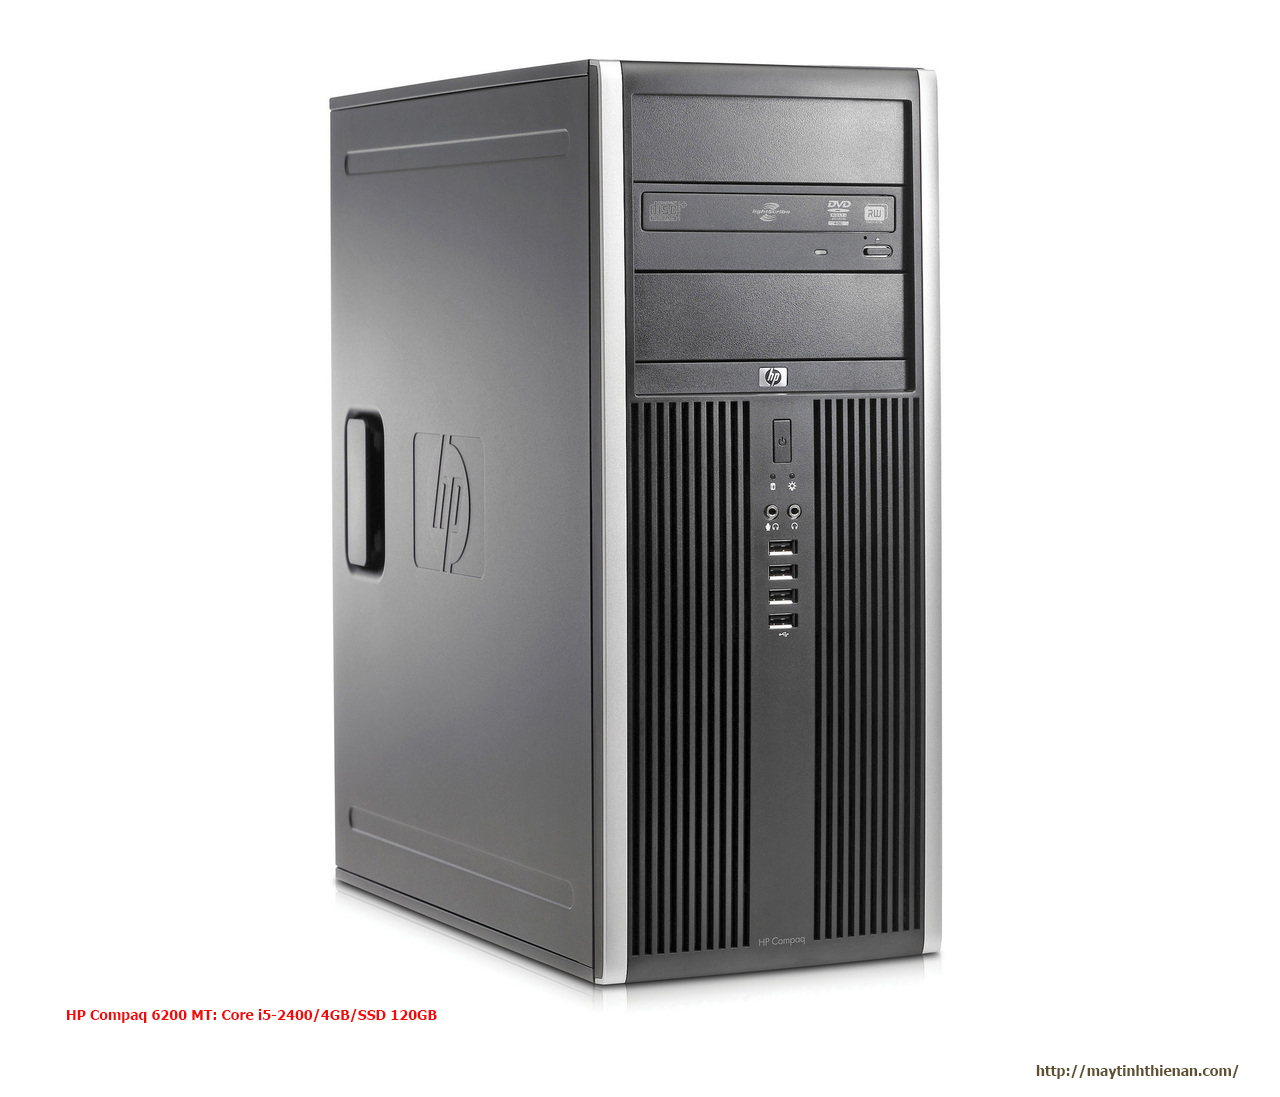 HP Compaq 6200 MT: Core i5-2400/4GB/SSD 120GB